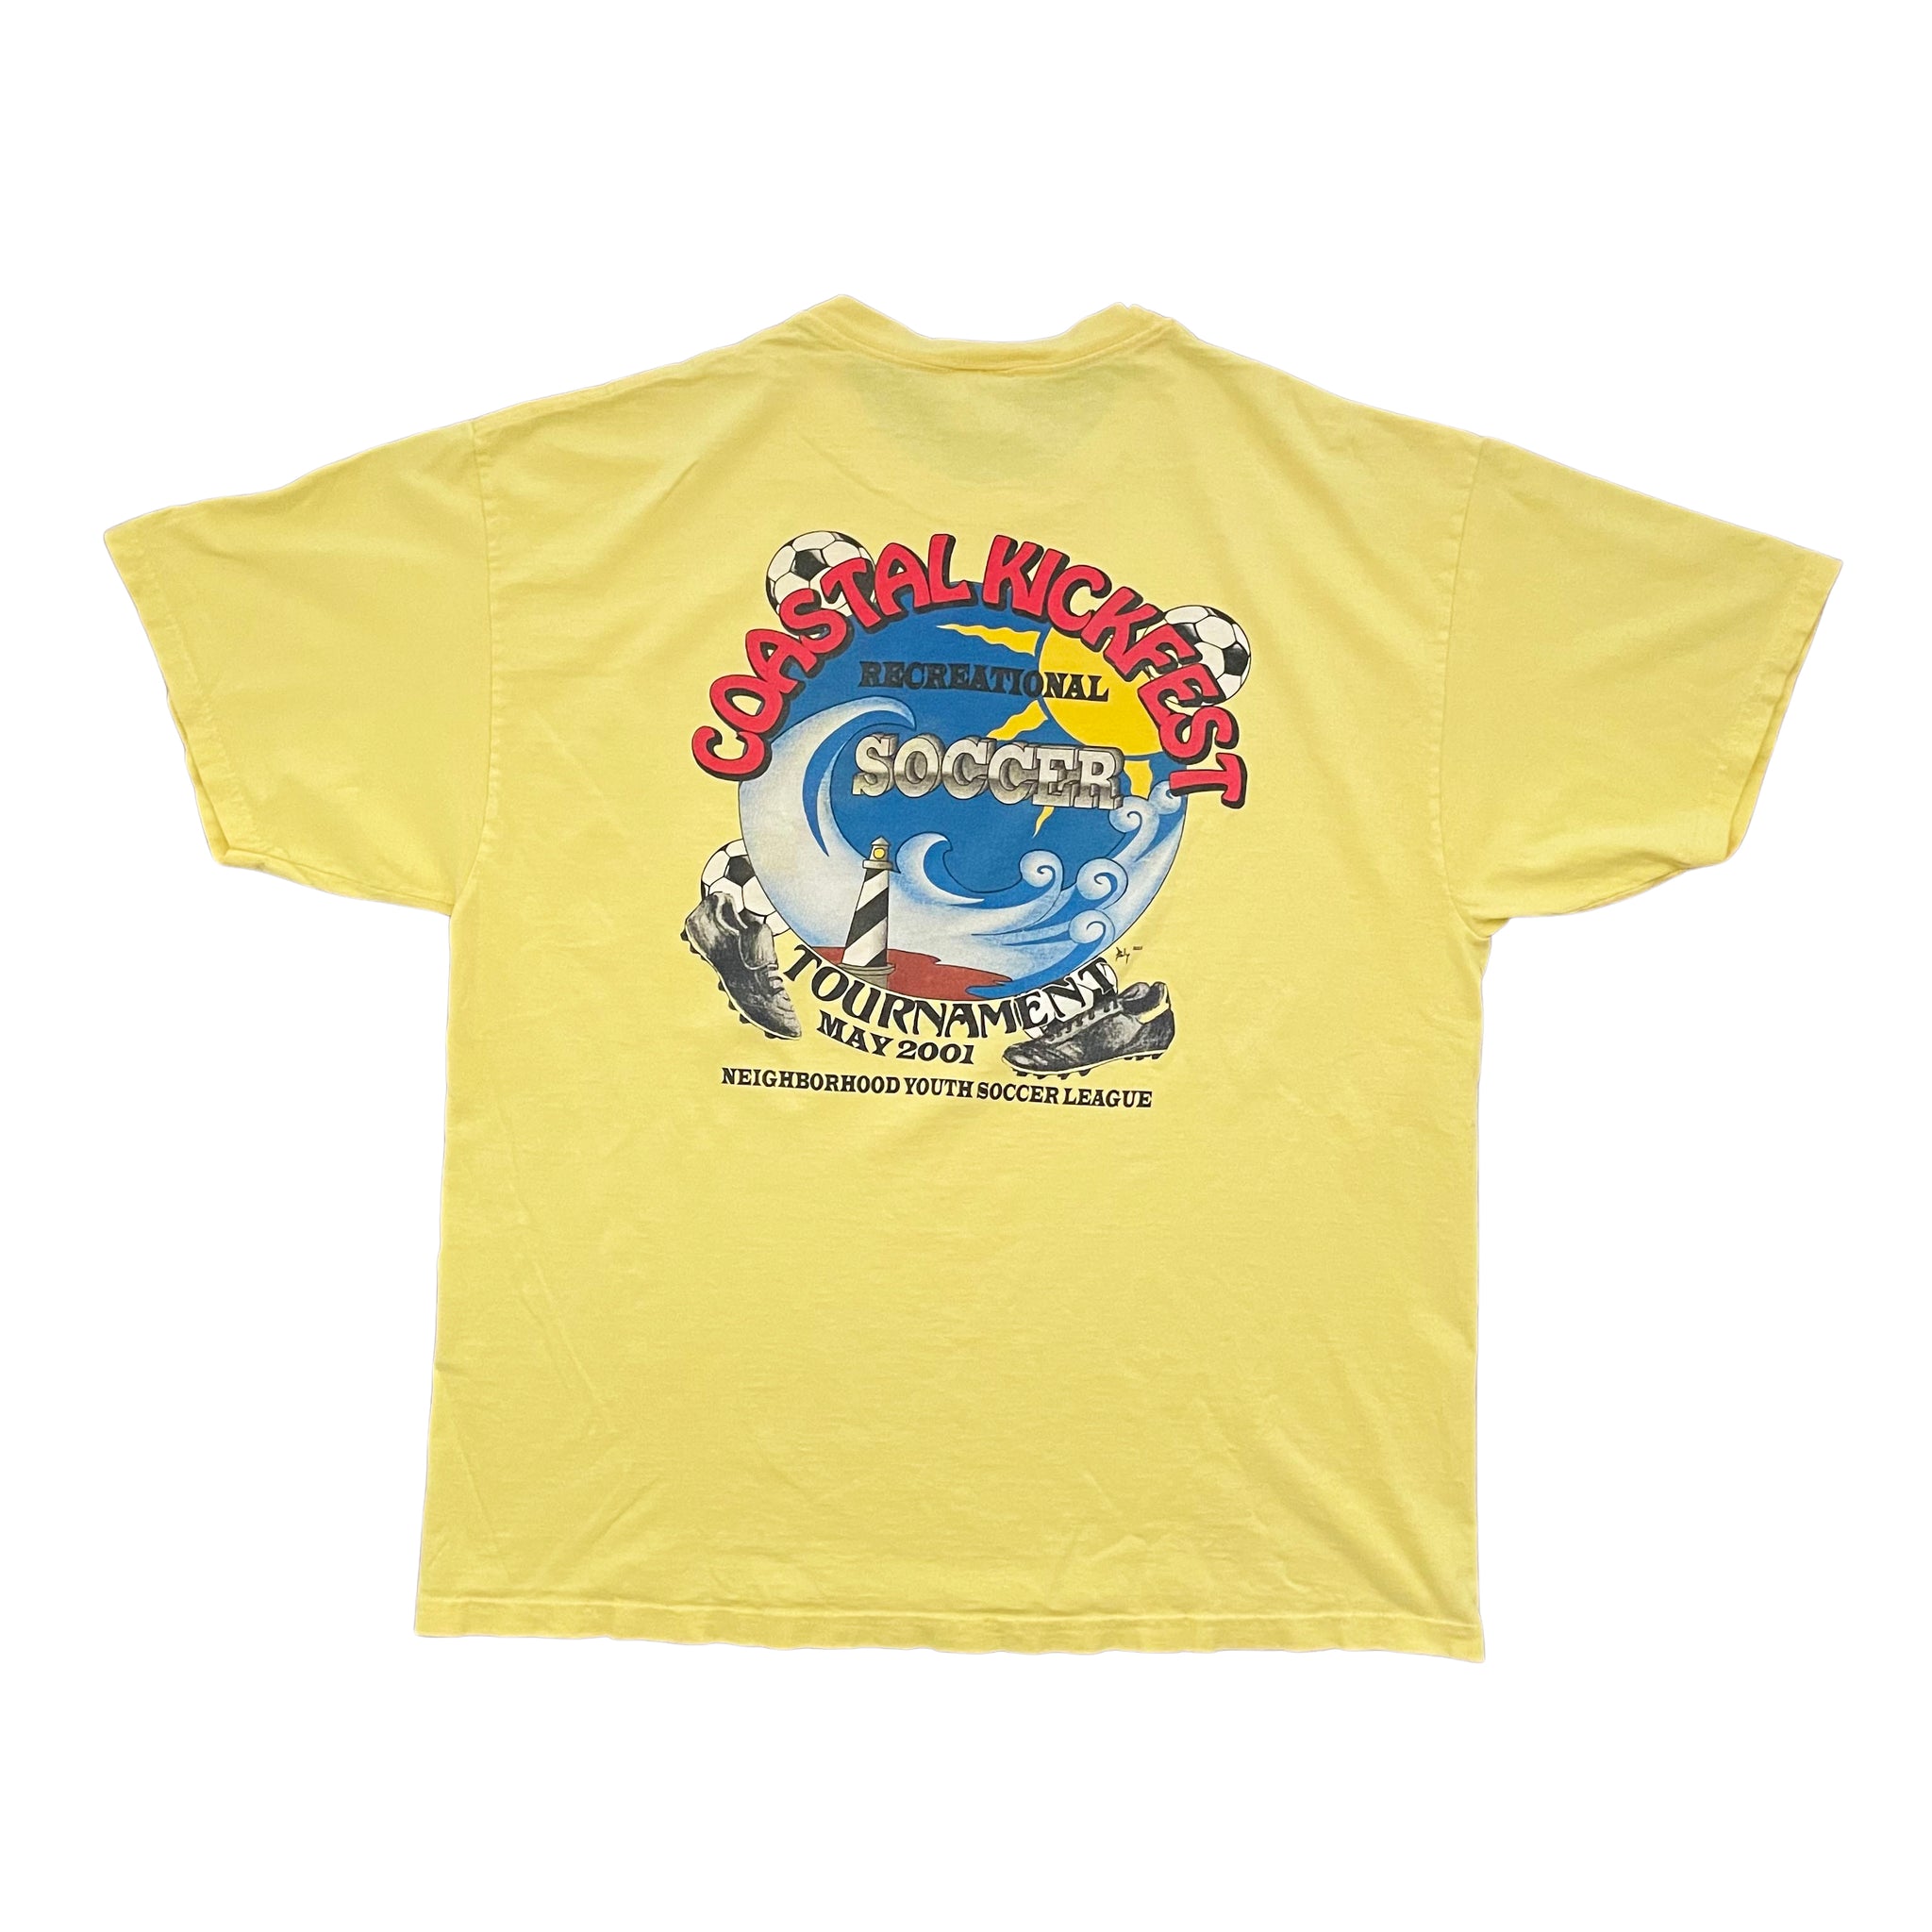 2001 Coastal Kickfest T-Shirt - XL